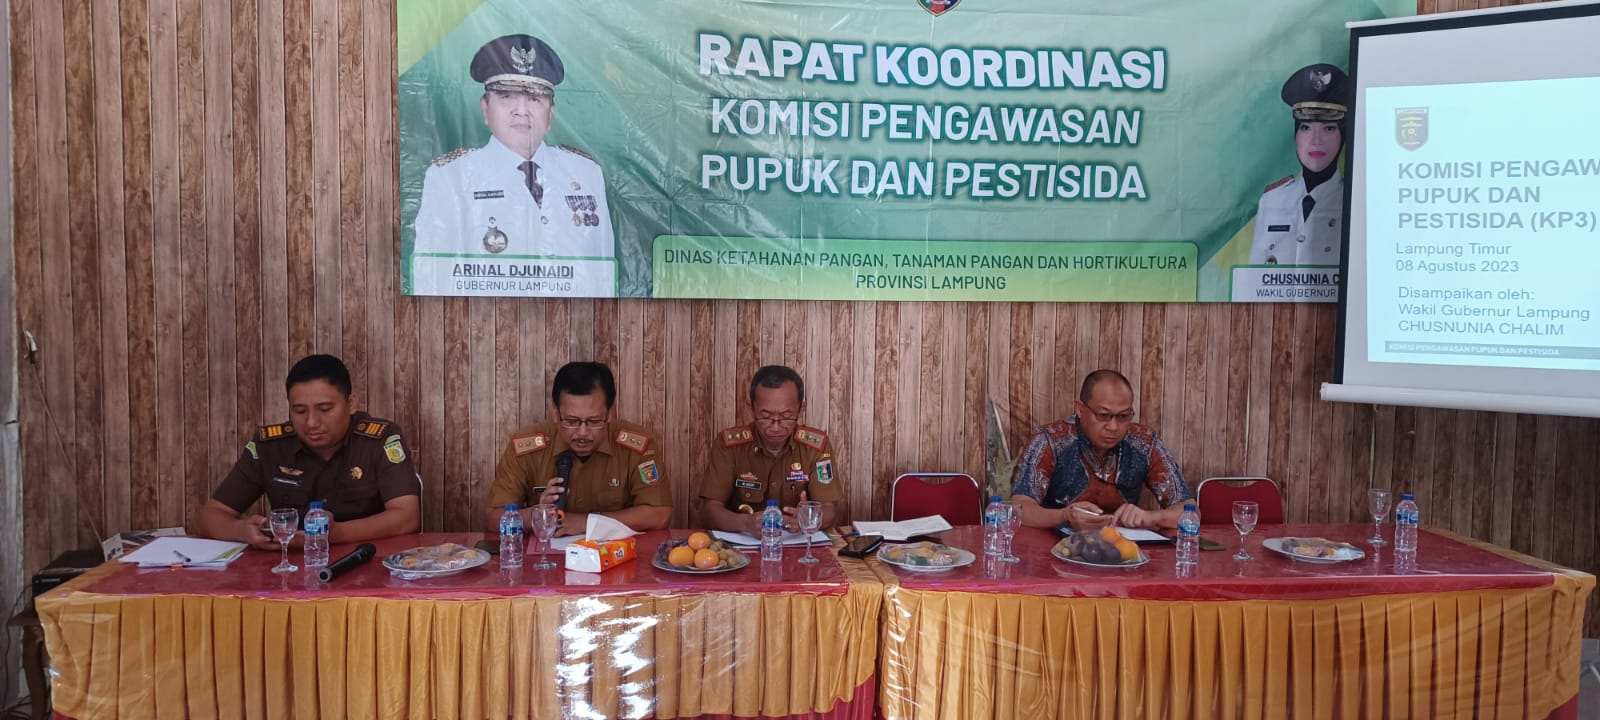 Cari Solusi Atasi Kelangkaan Pupuk Bersubsidi, KP3 Gelar Rapat Koordinasi di Lampung Timur